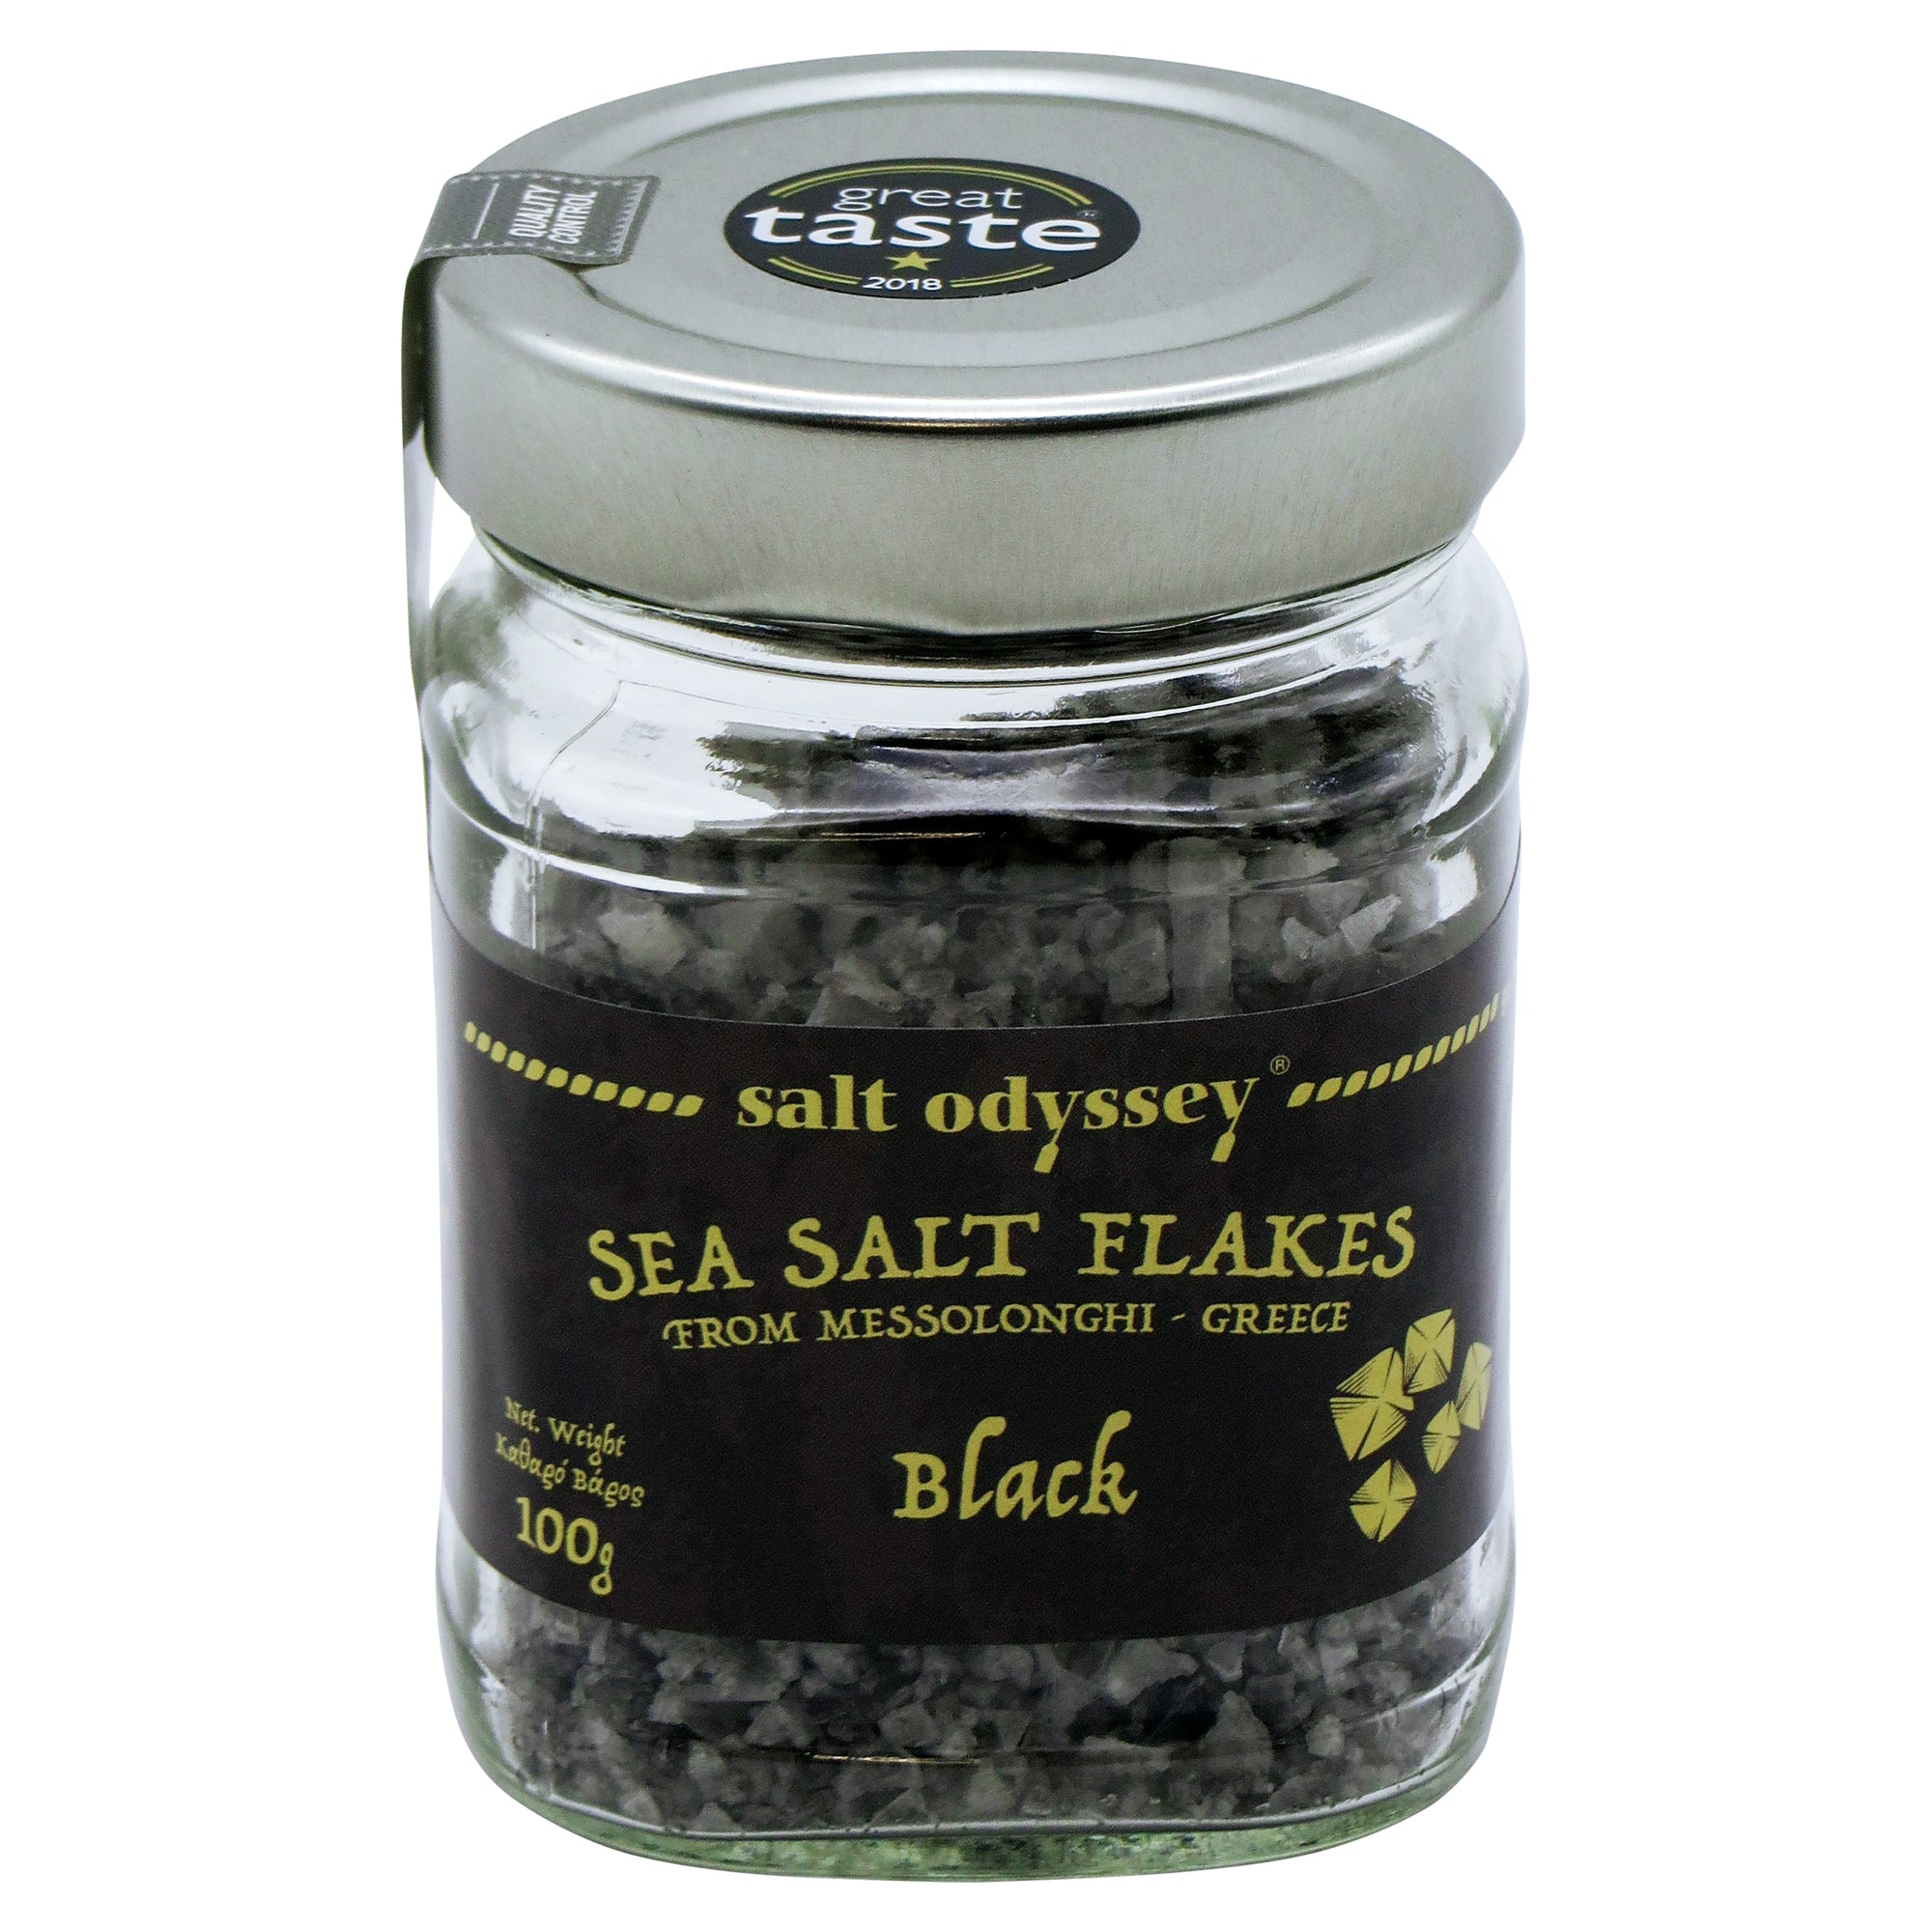 Black sea salt flakes 100g